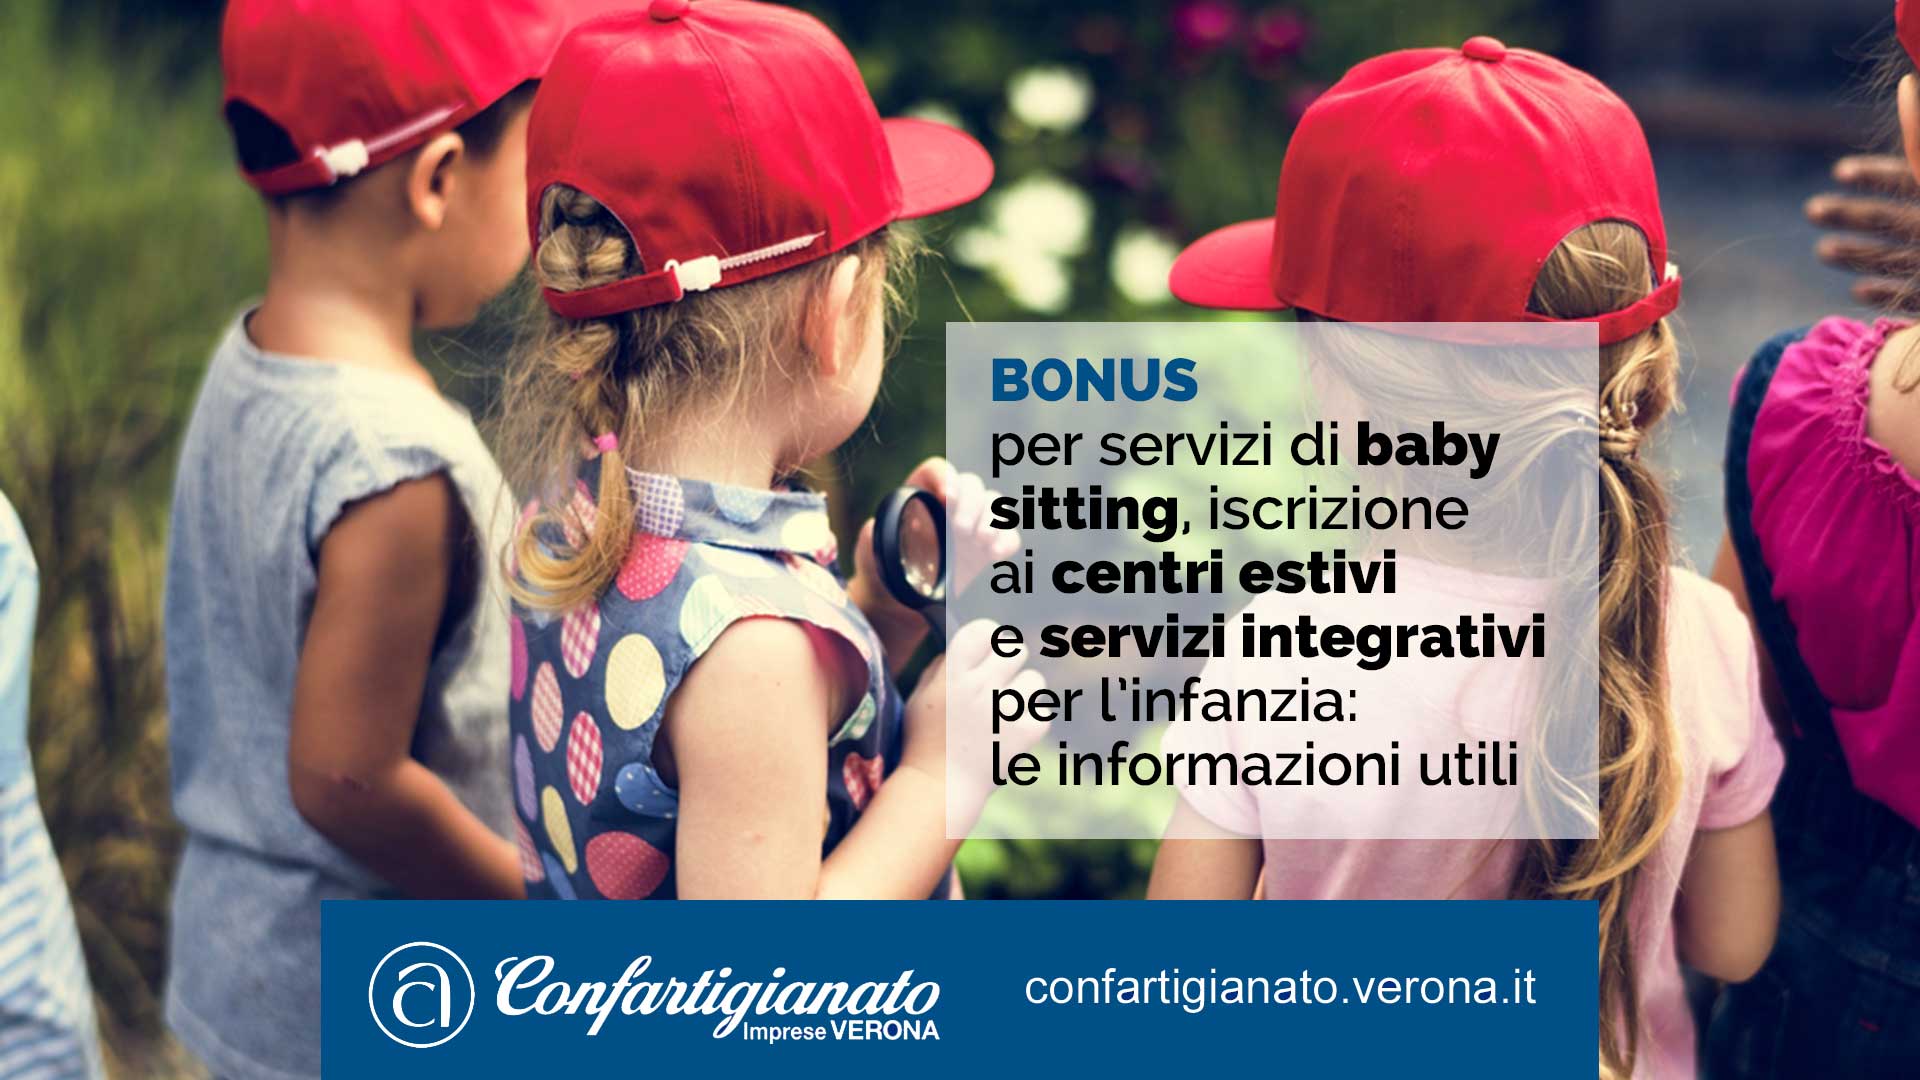 Bonus per servizi di baby sitting, iscrizione ai centri estivi e servizi integrativi per l’infanzia: le informazioni utili